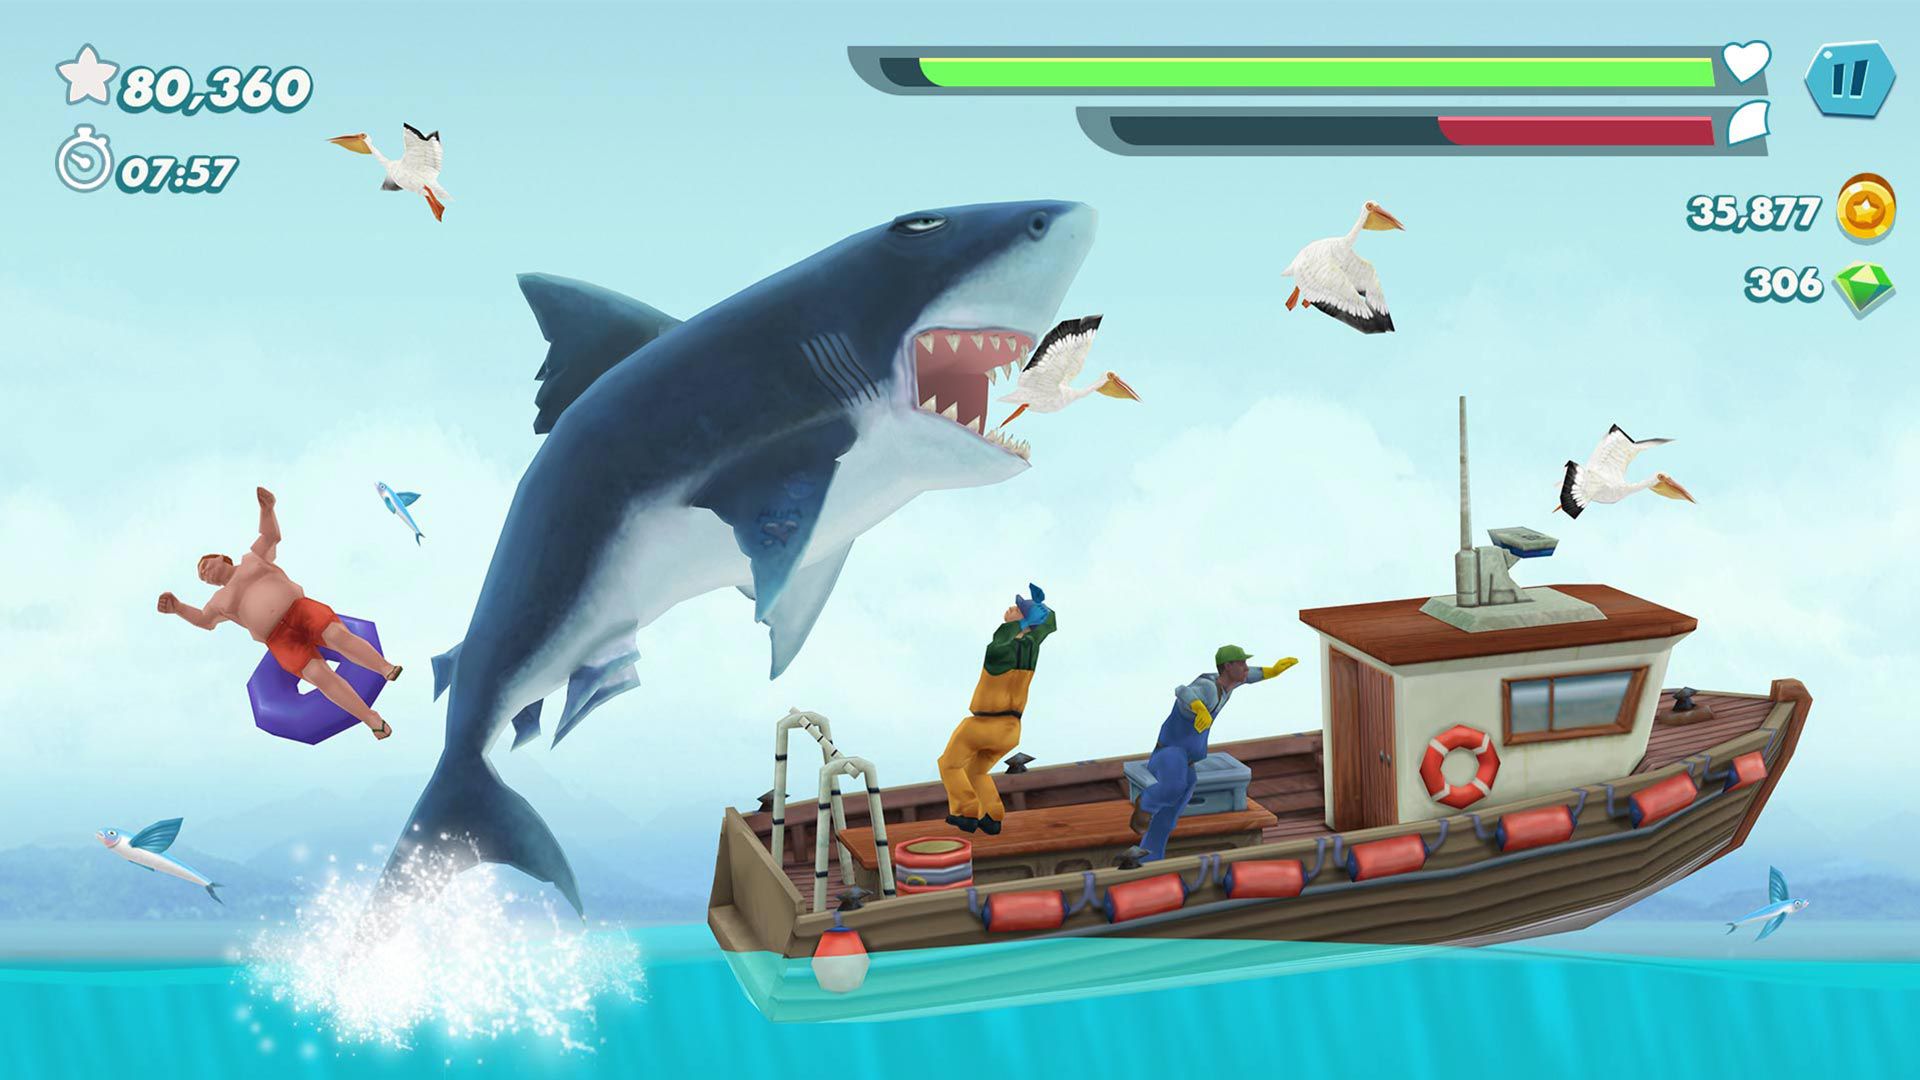 محیط بازی Hungry Shark که کوسه ای را در حال حمله به قایق چوبی نشان می دهد